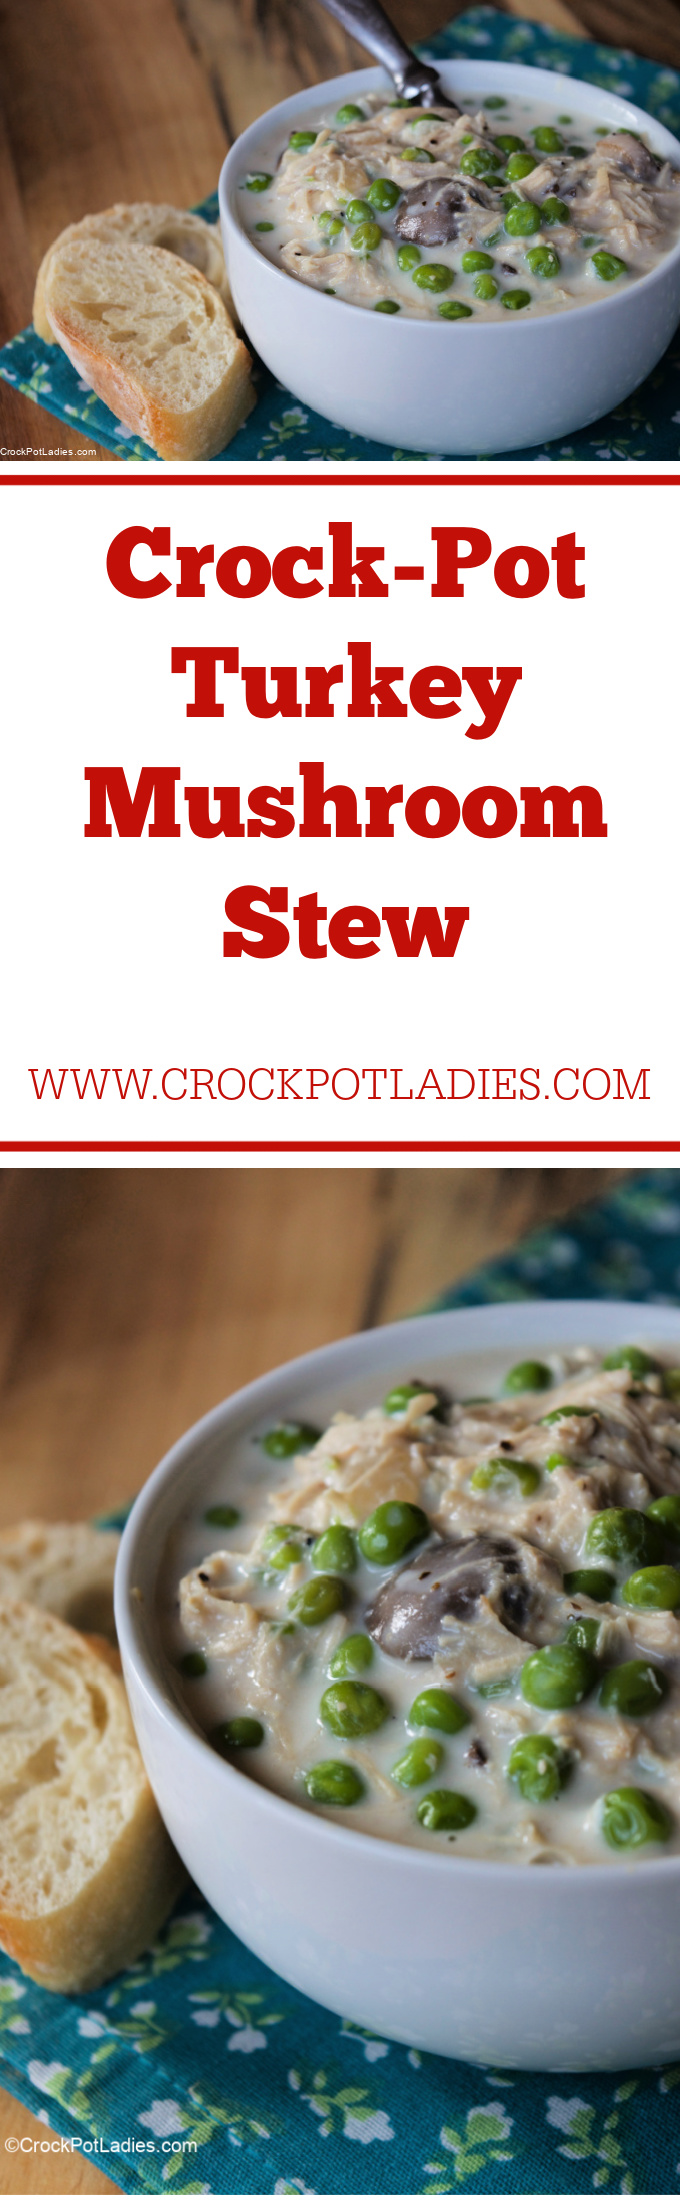 Crock-Pot Turkey Mushroom Stew